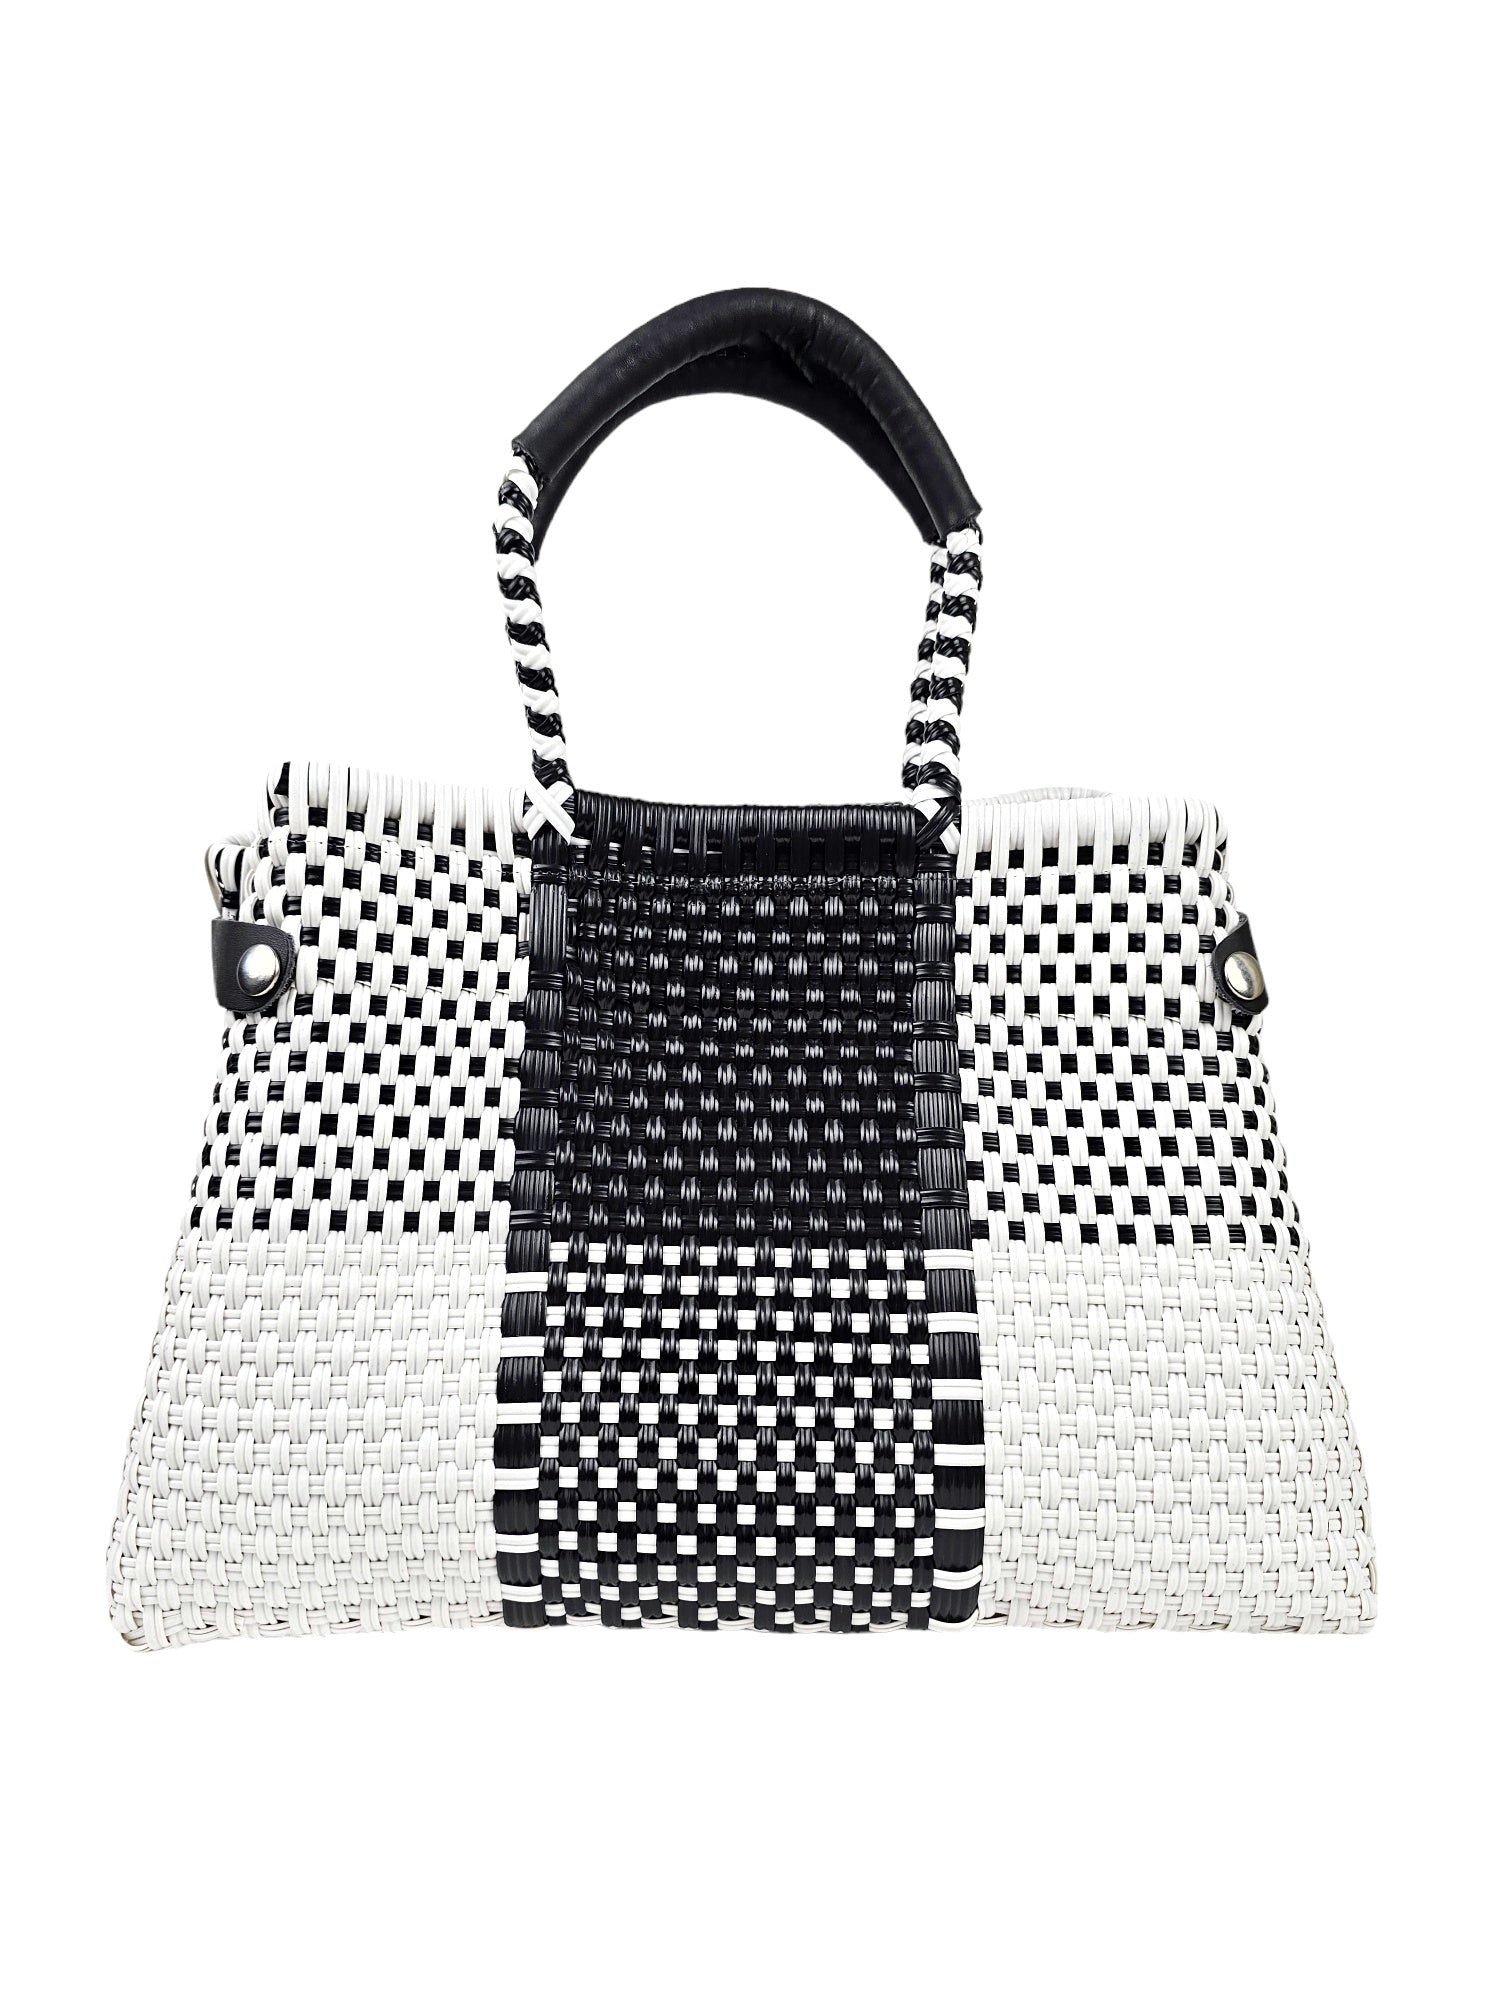 Less Pollution Convertible Handbag - Black & White Luxe